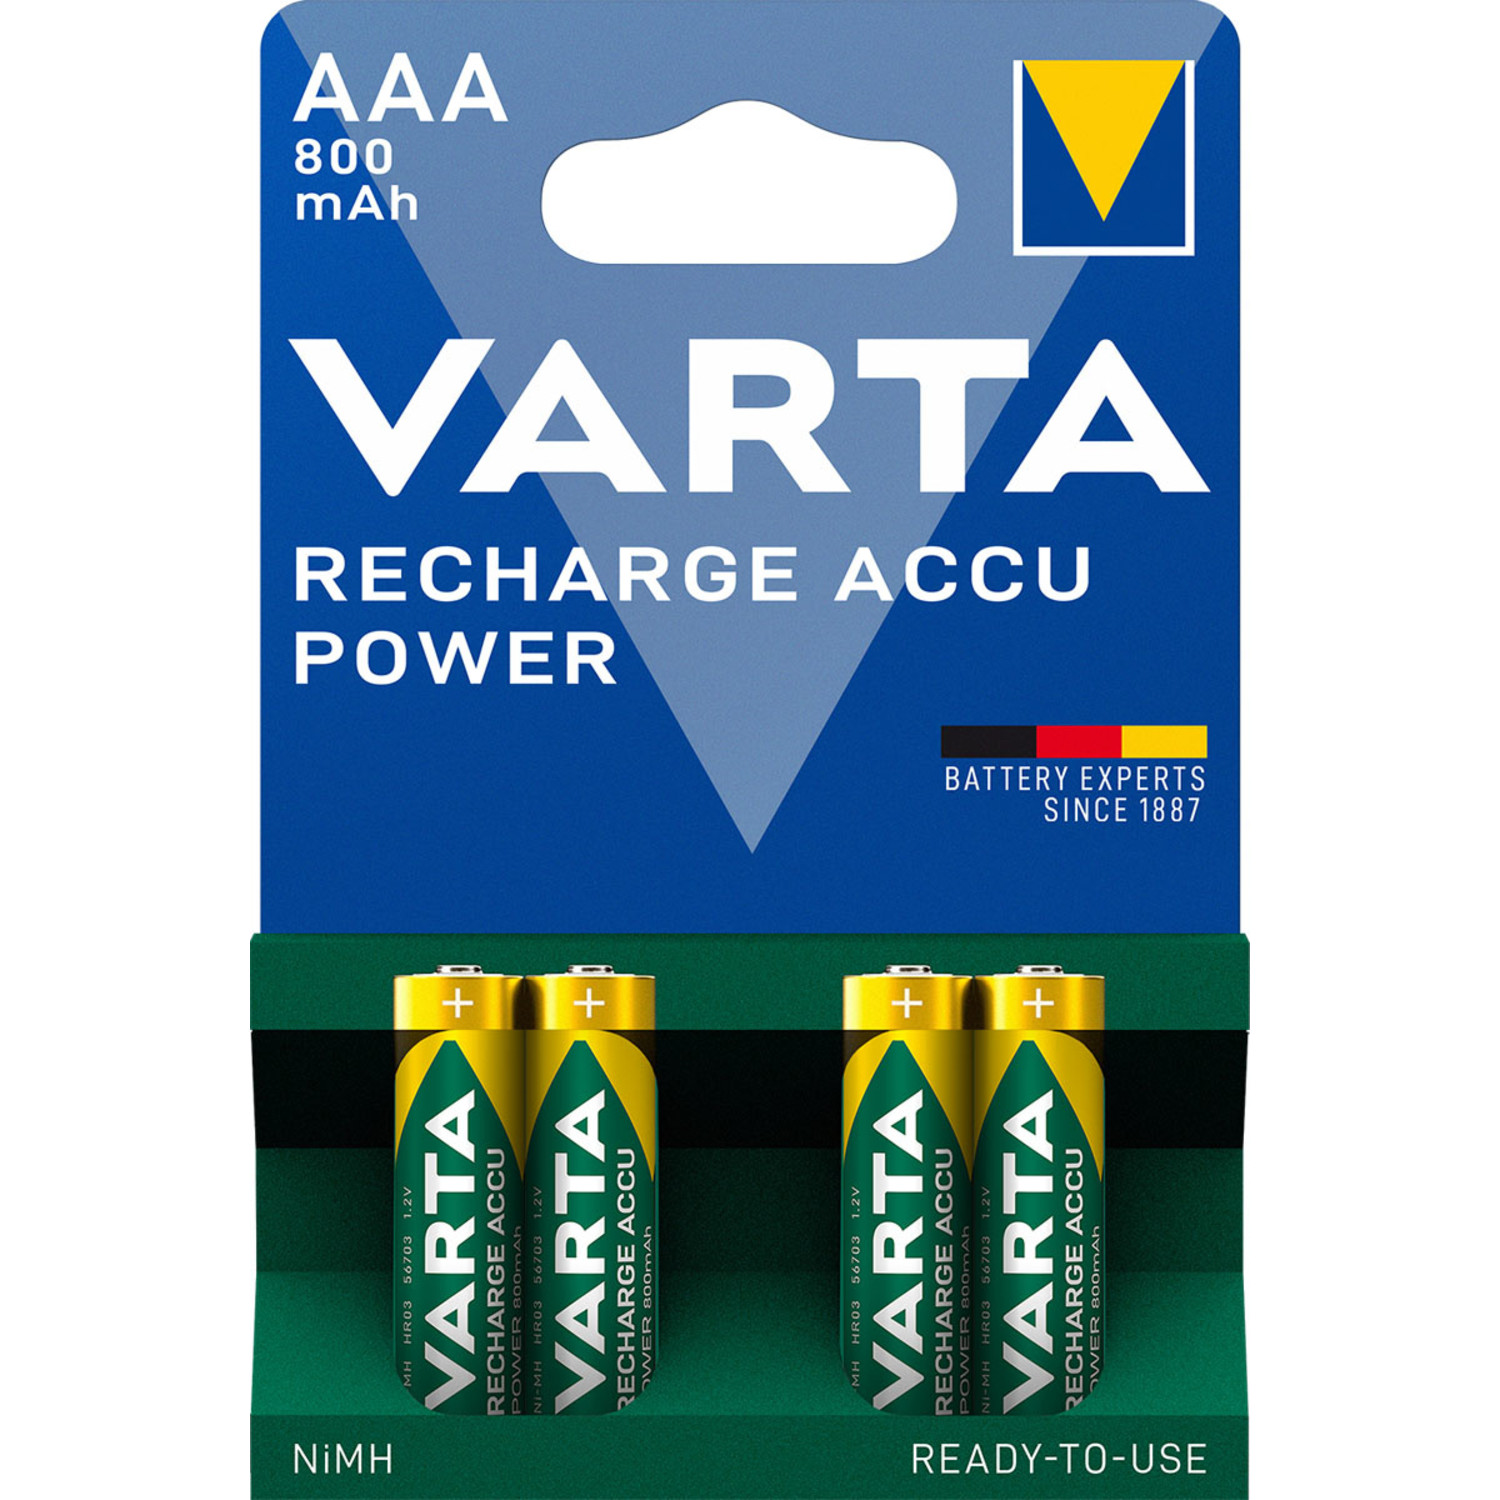 Uit Hij Dakloos Varta AAA - oplaadbare batterijen 800mAh 4 stuks - Beterbatterij